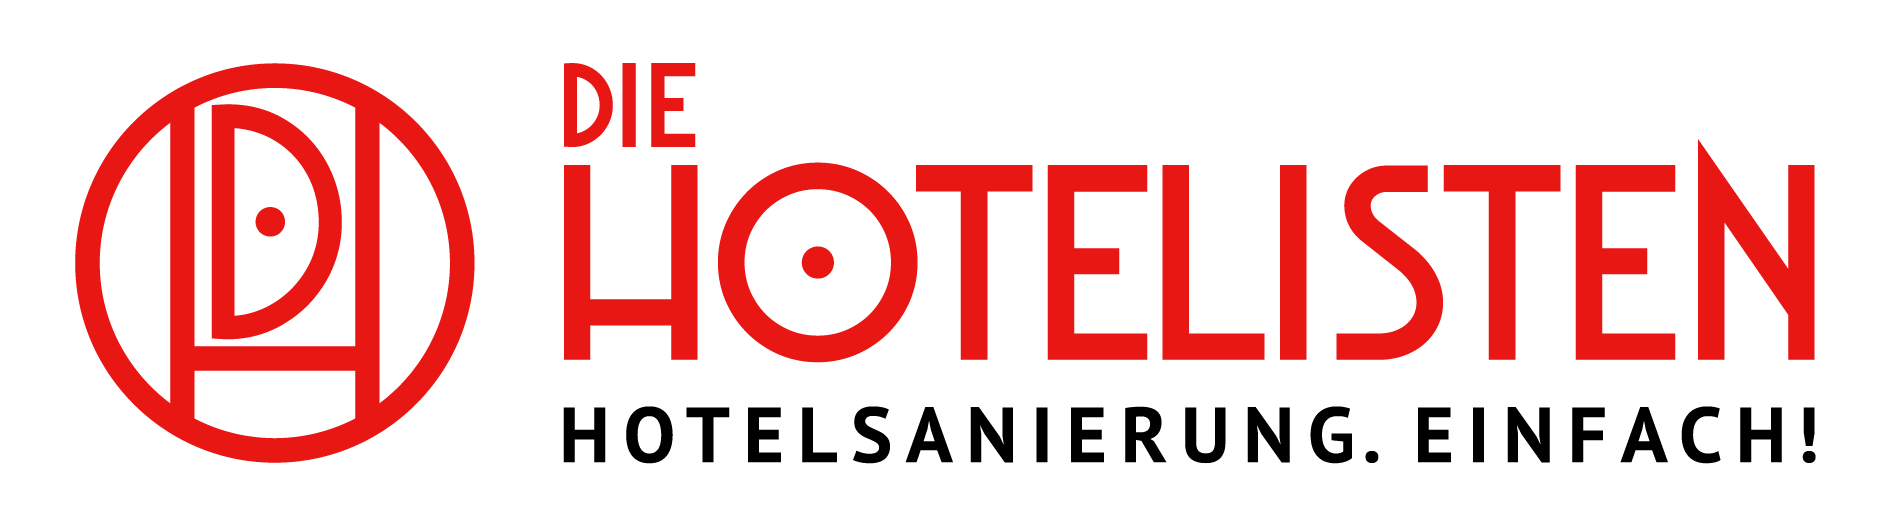 Die Hotelisten